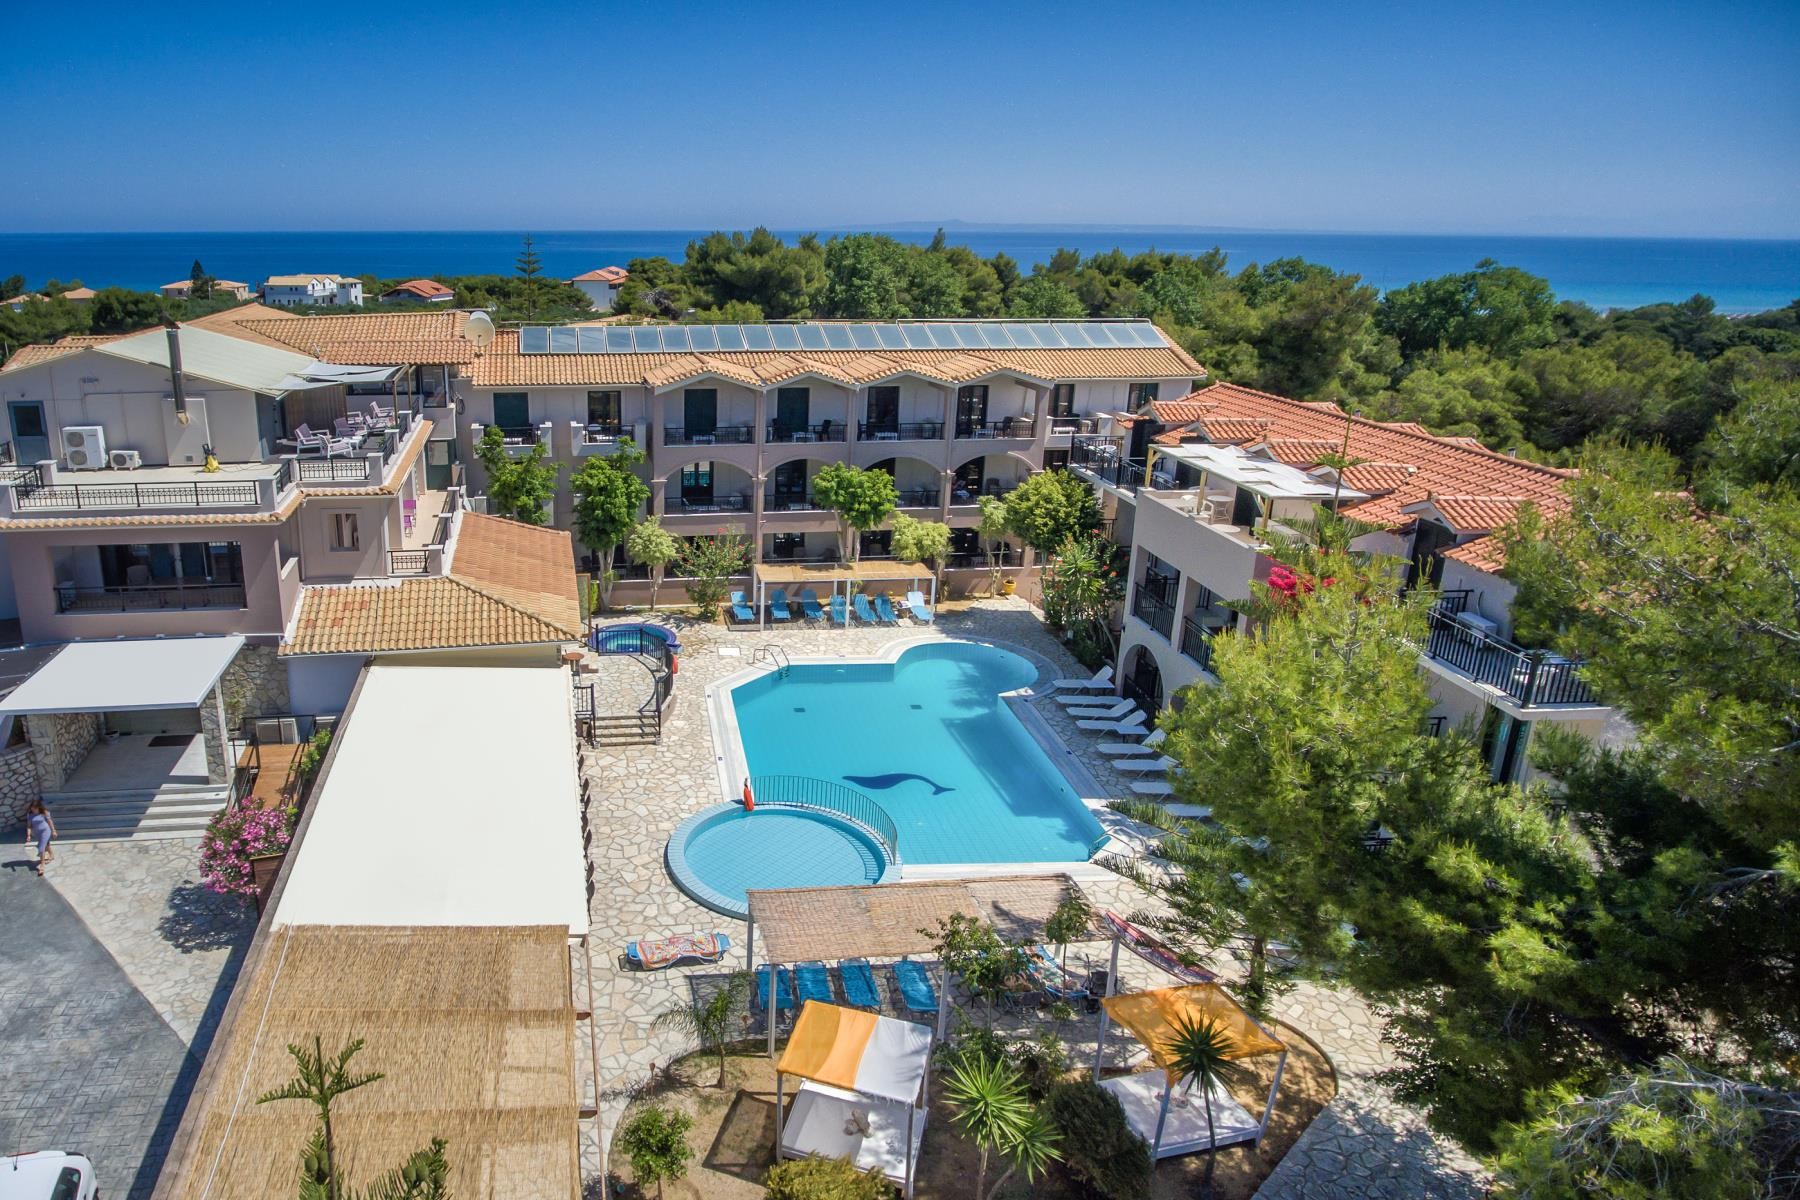 Arion Resort Vassilikos (Zakynthos)